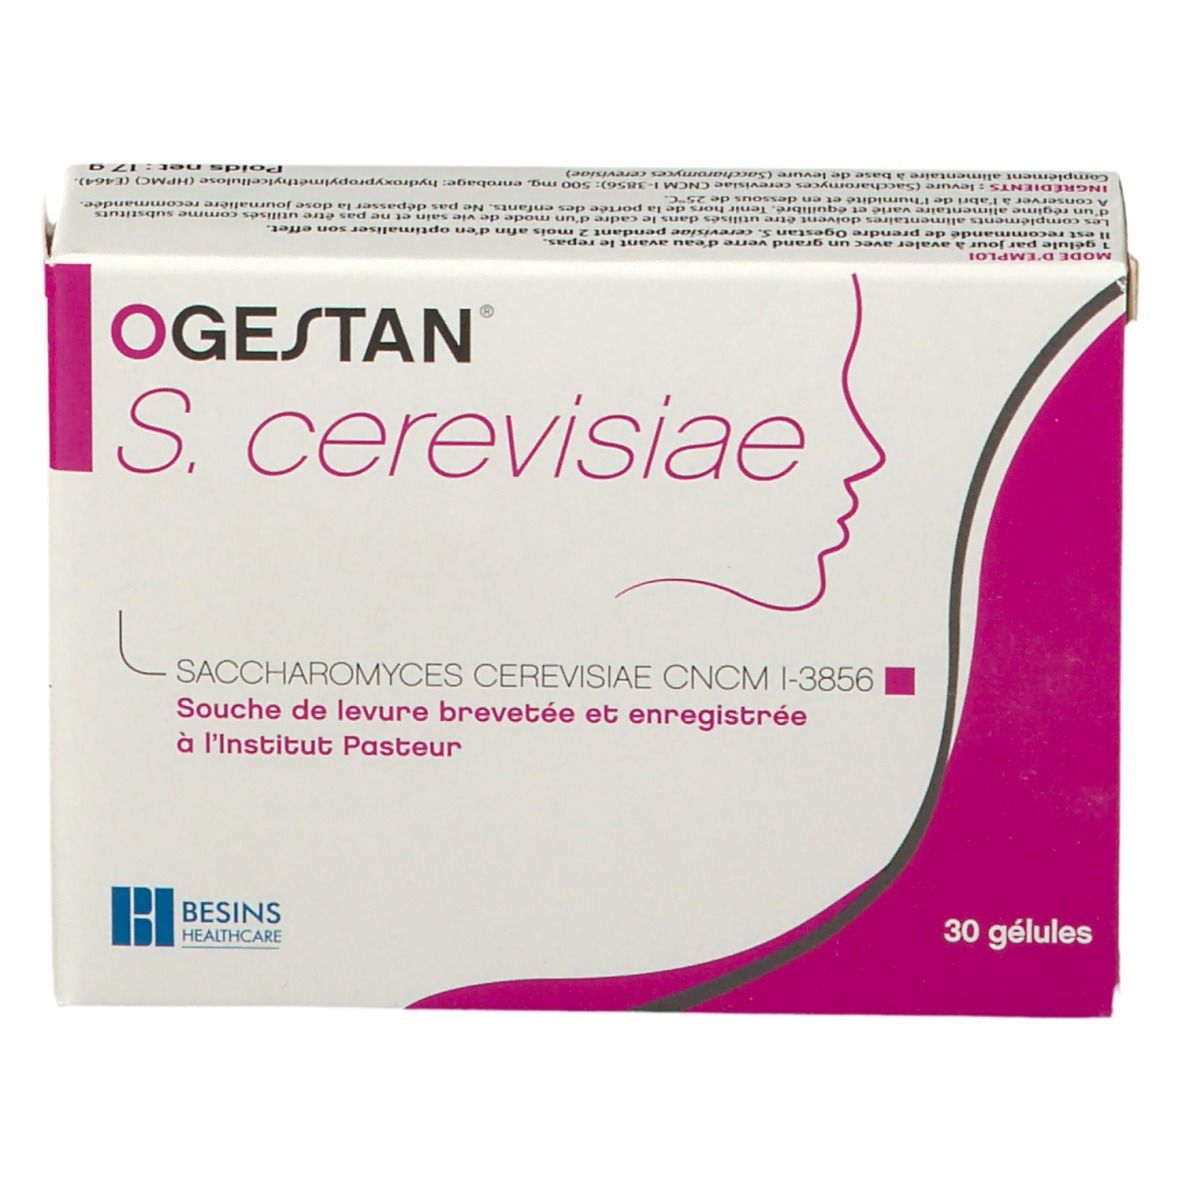 OGESTAN® S. cerevisiae